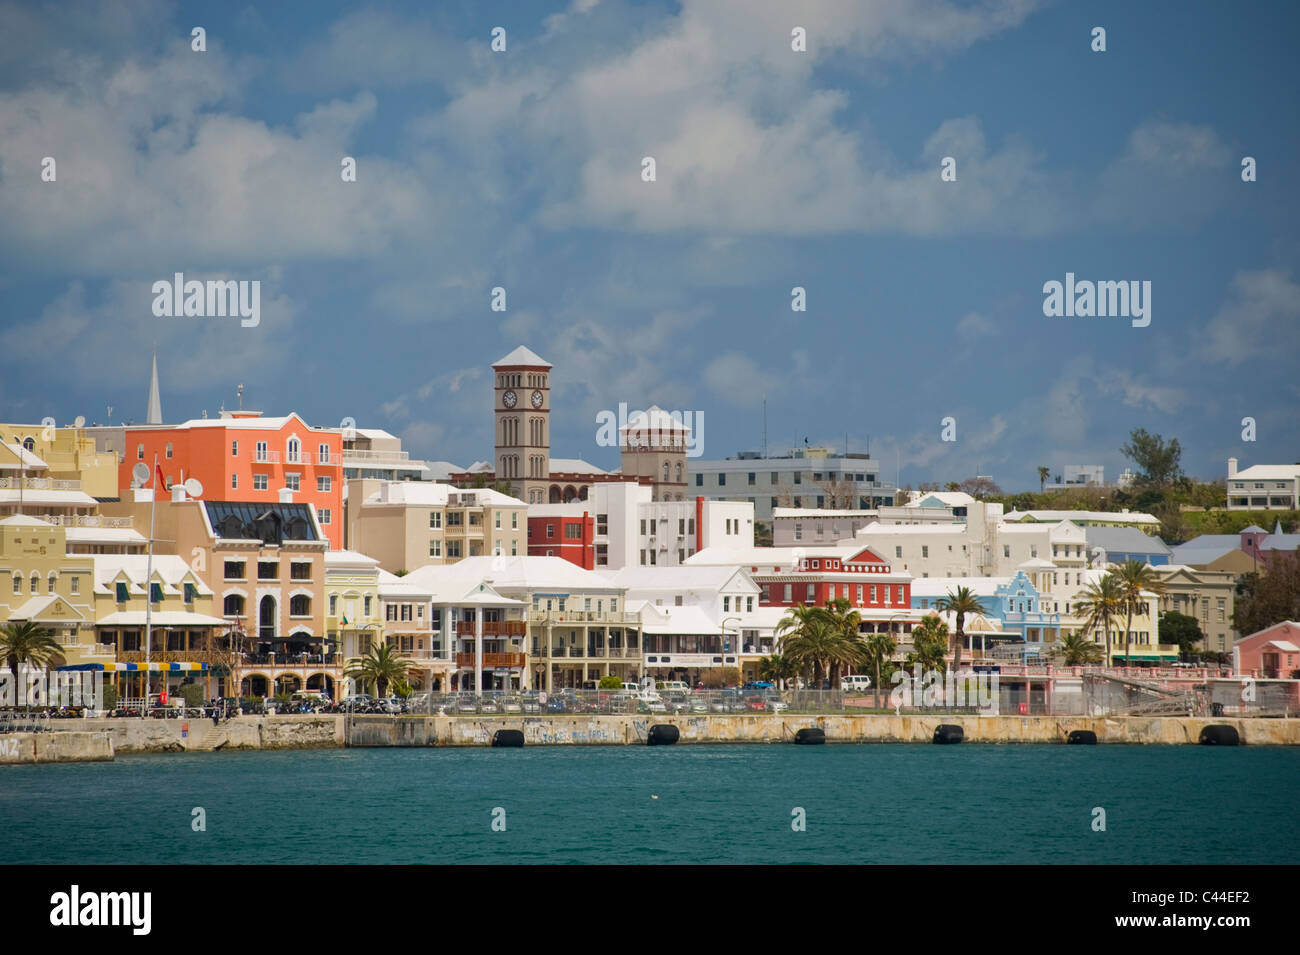 Die Uferpromenade und bunte, historische Architektur von Hamilton, Bermuda. Stockfoto